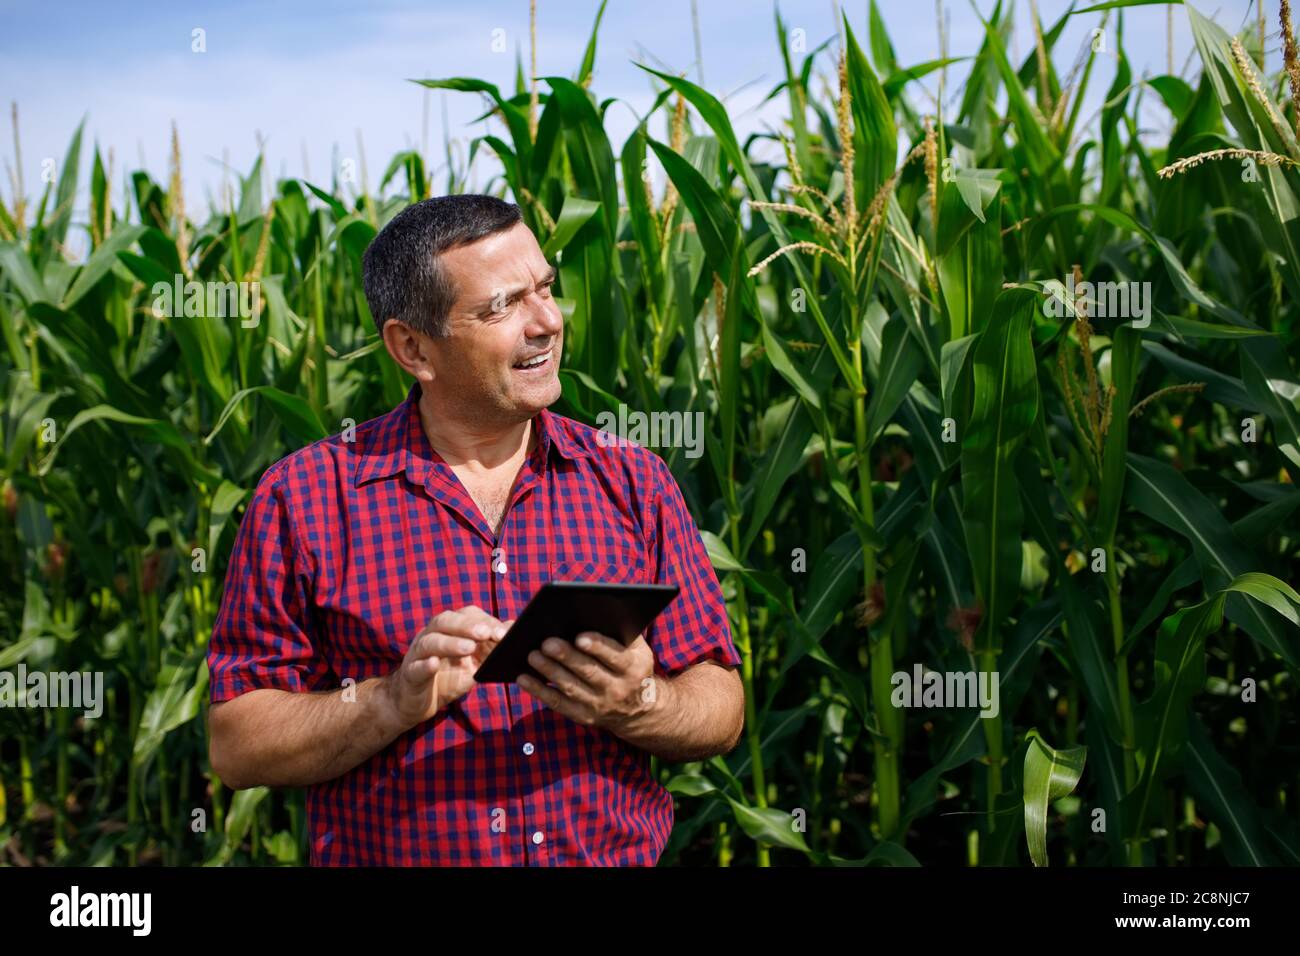 El agrónomo inspecciona el campo de maíz Foto de stock